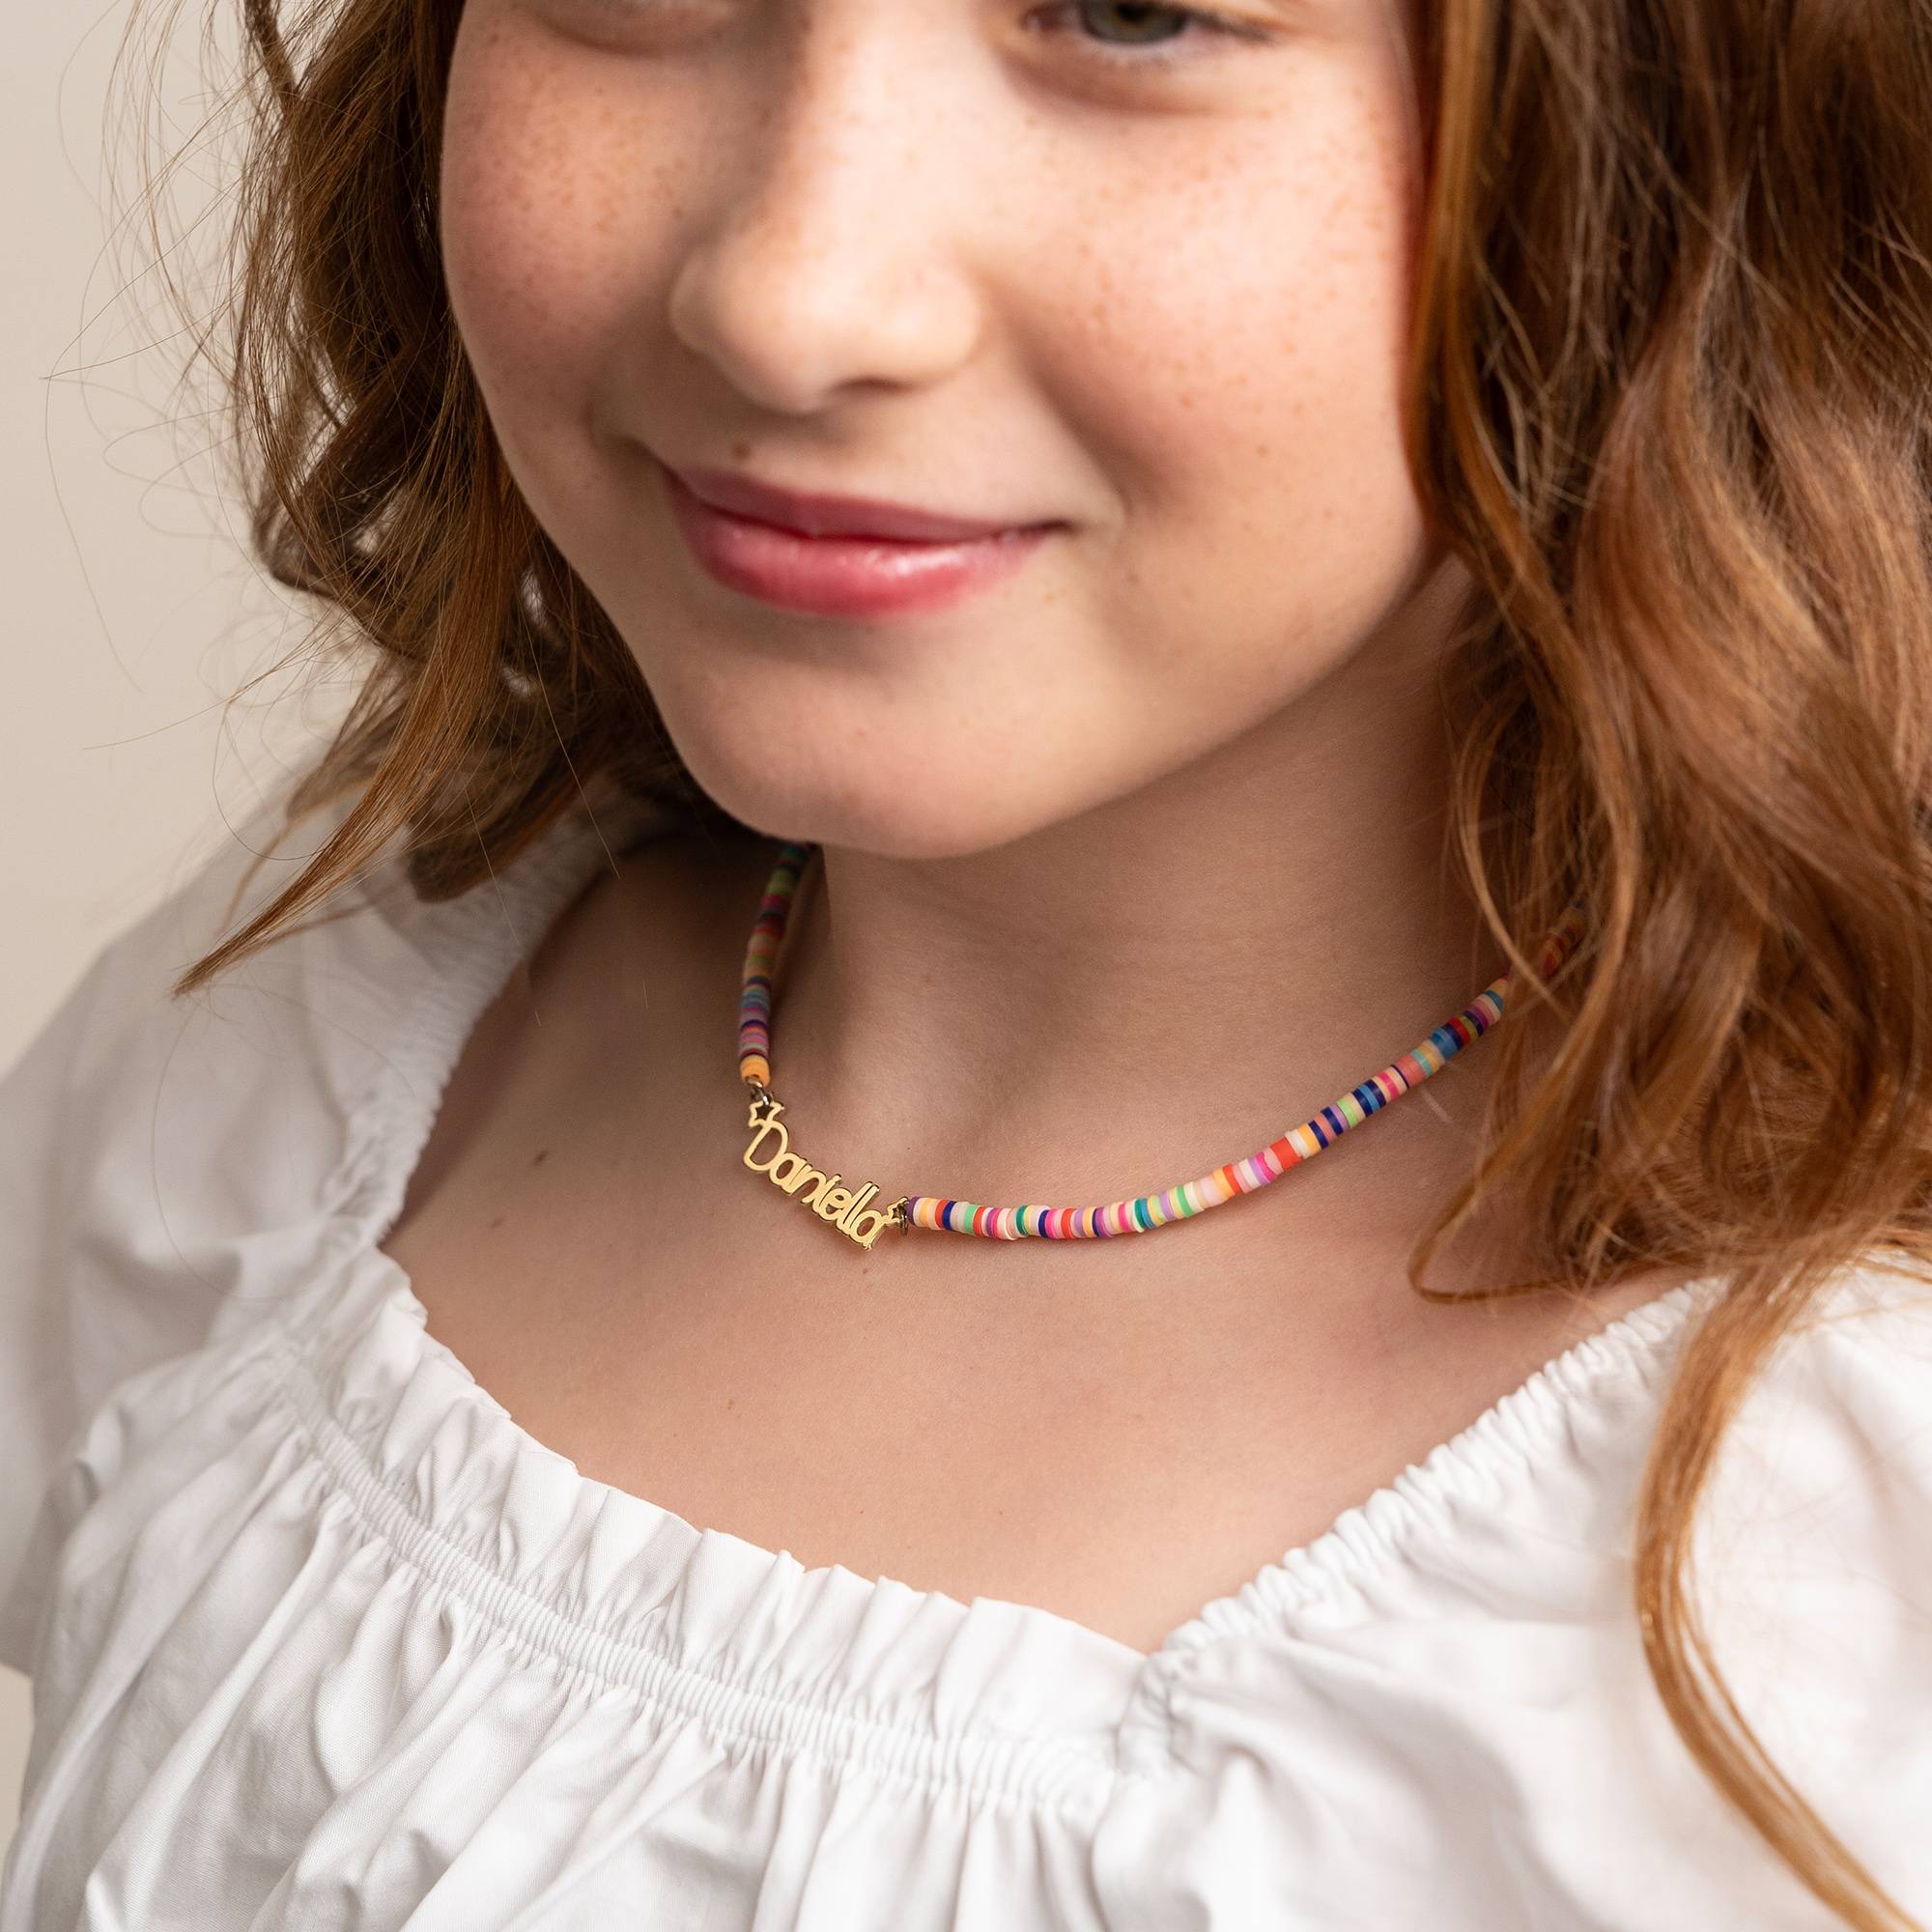 Regenbogenkette für Mädchen - 750er vergoldetes Silber-4 Produktfoto